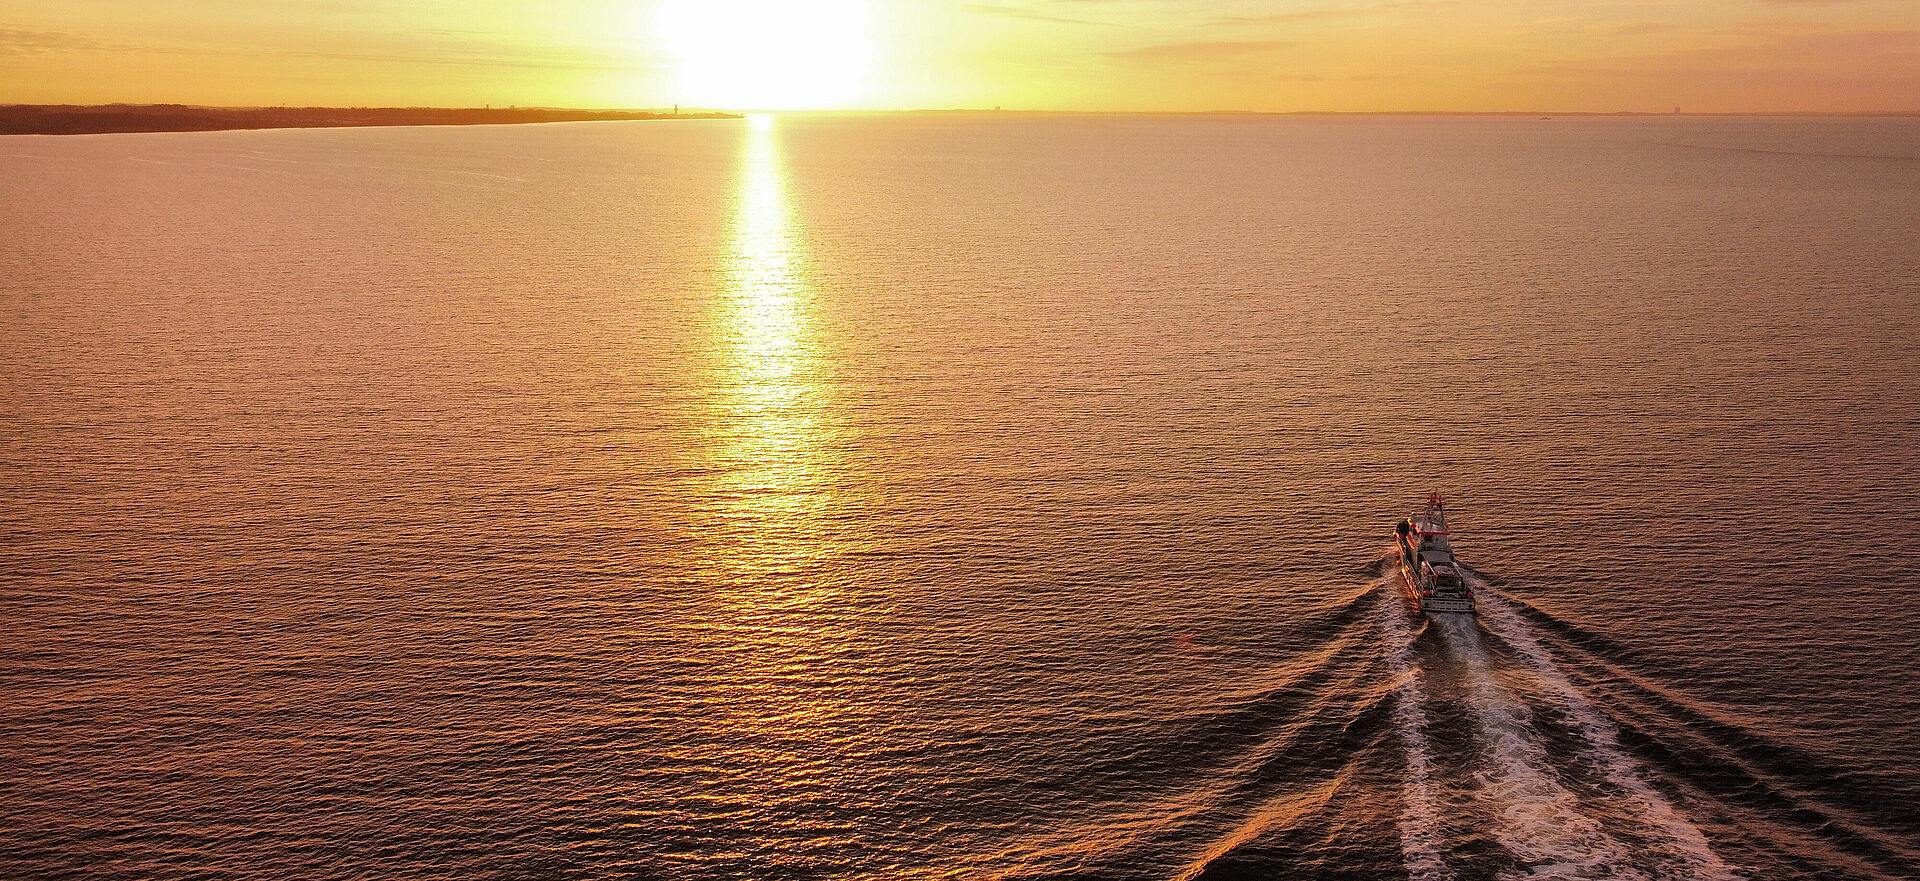 Sonnenuntergang über der Ostsee - ein Seenotrettungskreuzer fährt auf den Horizont zu.